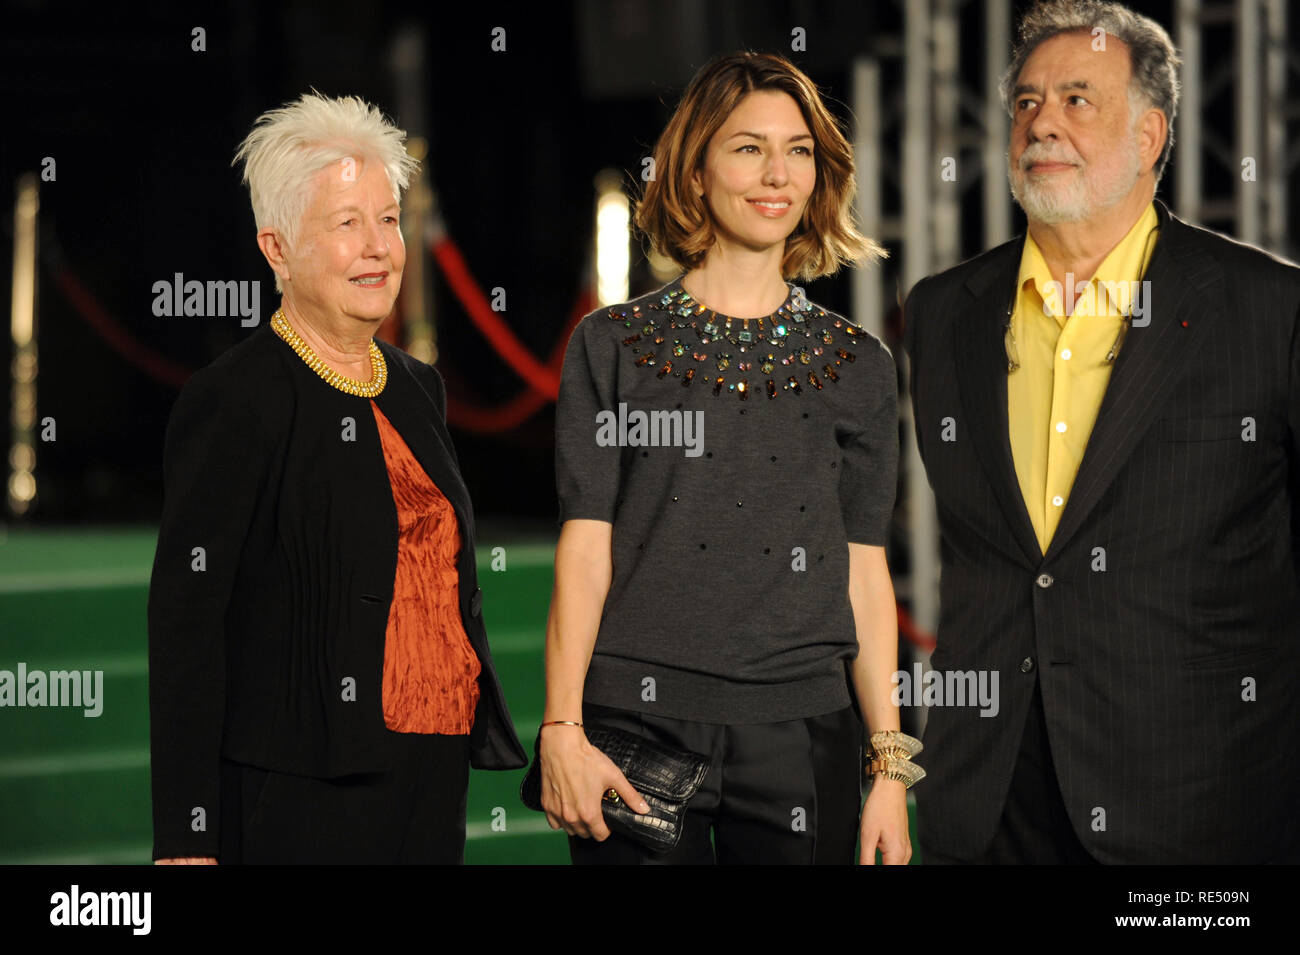 Elenor Coppola, Sofia Coppola et Francis Ford Coppola assister à la 26e Festival International du Film de Tokyo Roppongi Hills à la cérémonie d'ouverture à Tokyo, Japon, le 17 octobre 2013. Banque D'Images